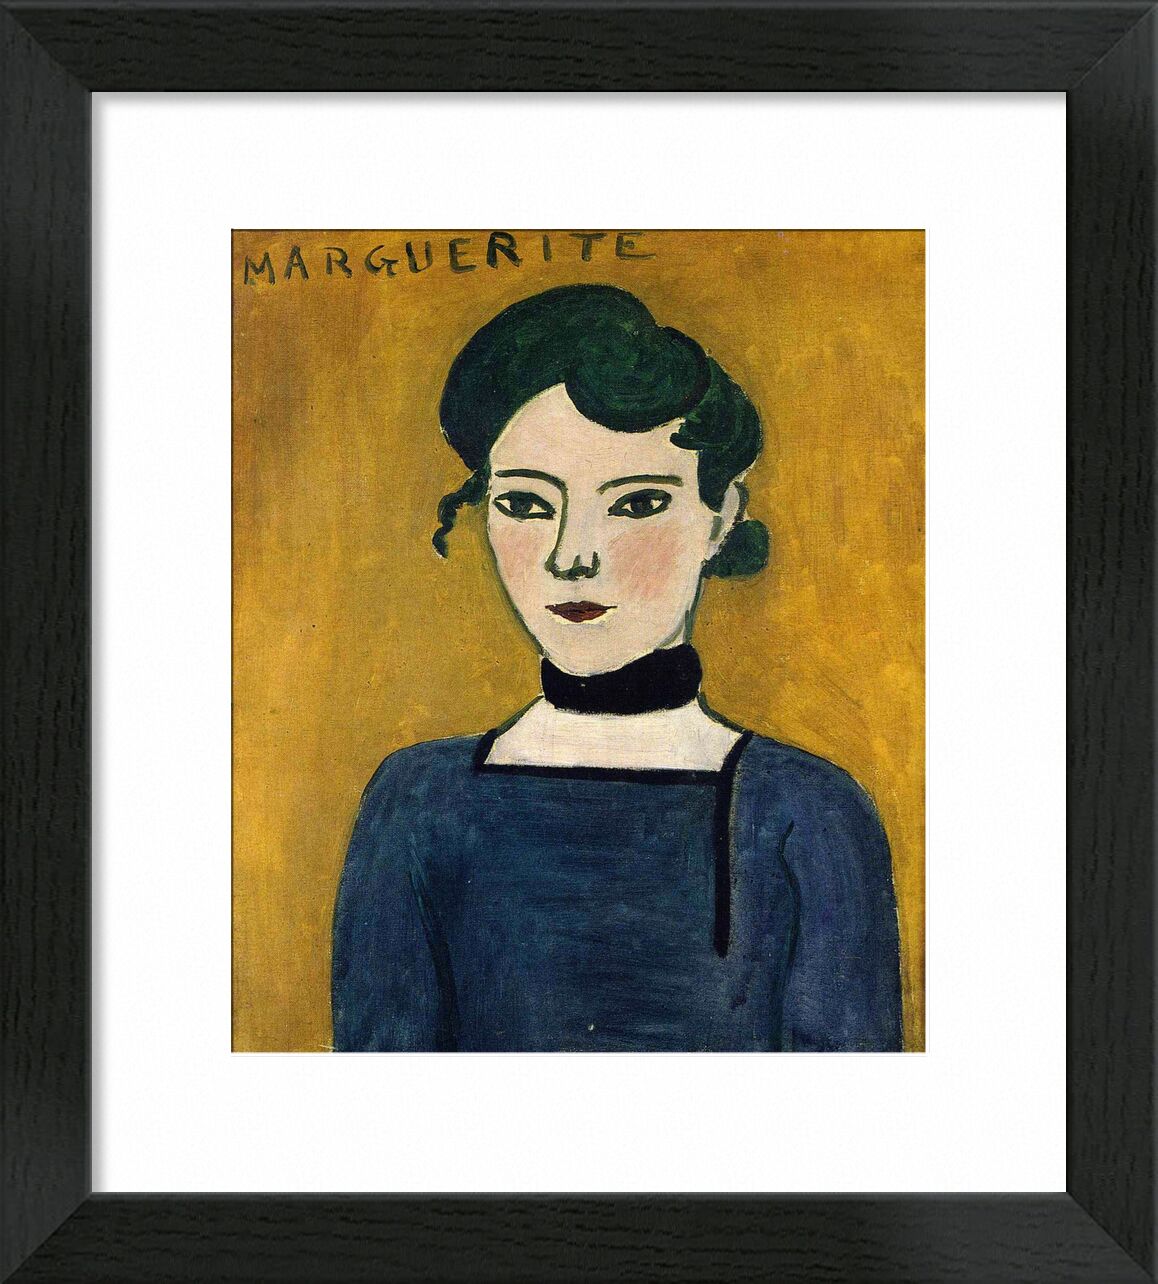 Marguerite, 1907 - Matisse von Bildende Kunst, Prodi Art, Matisse, Henri Matisse, Porträt, Malerei